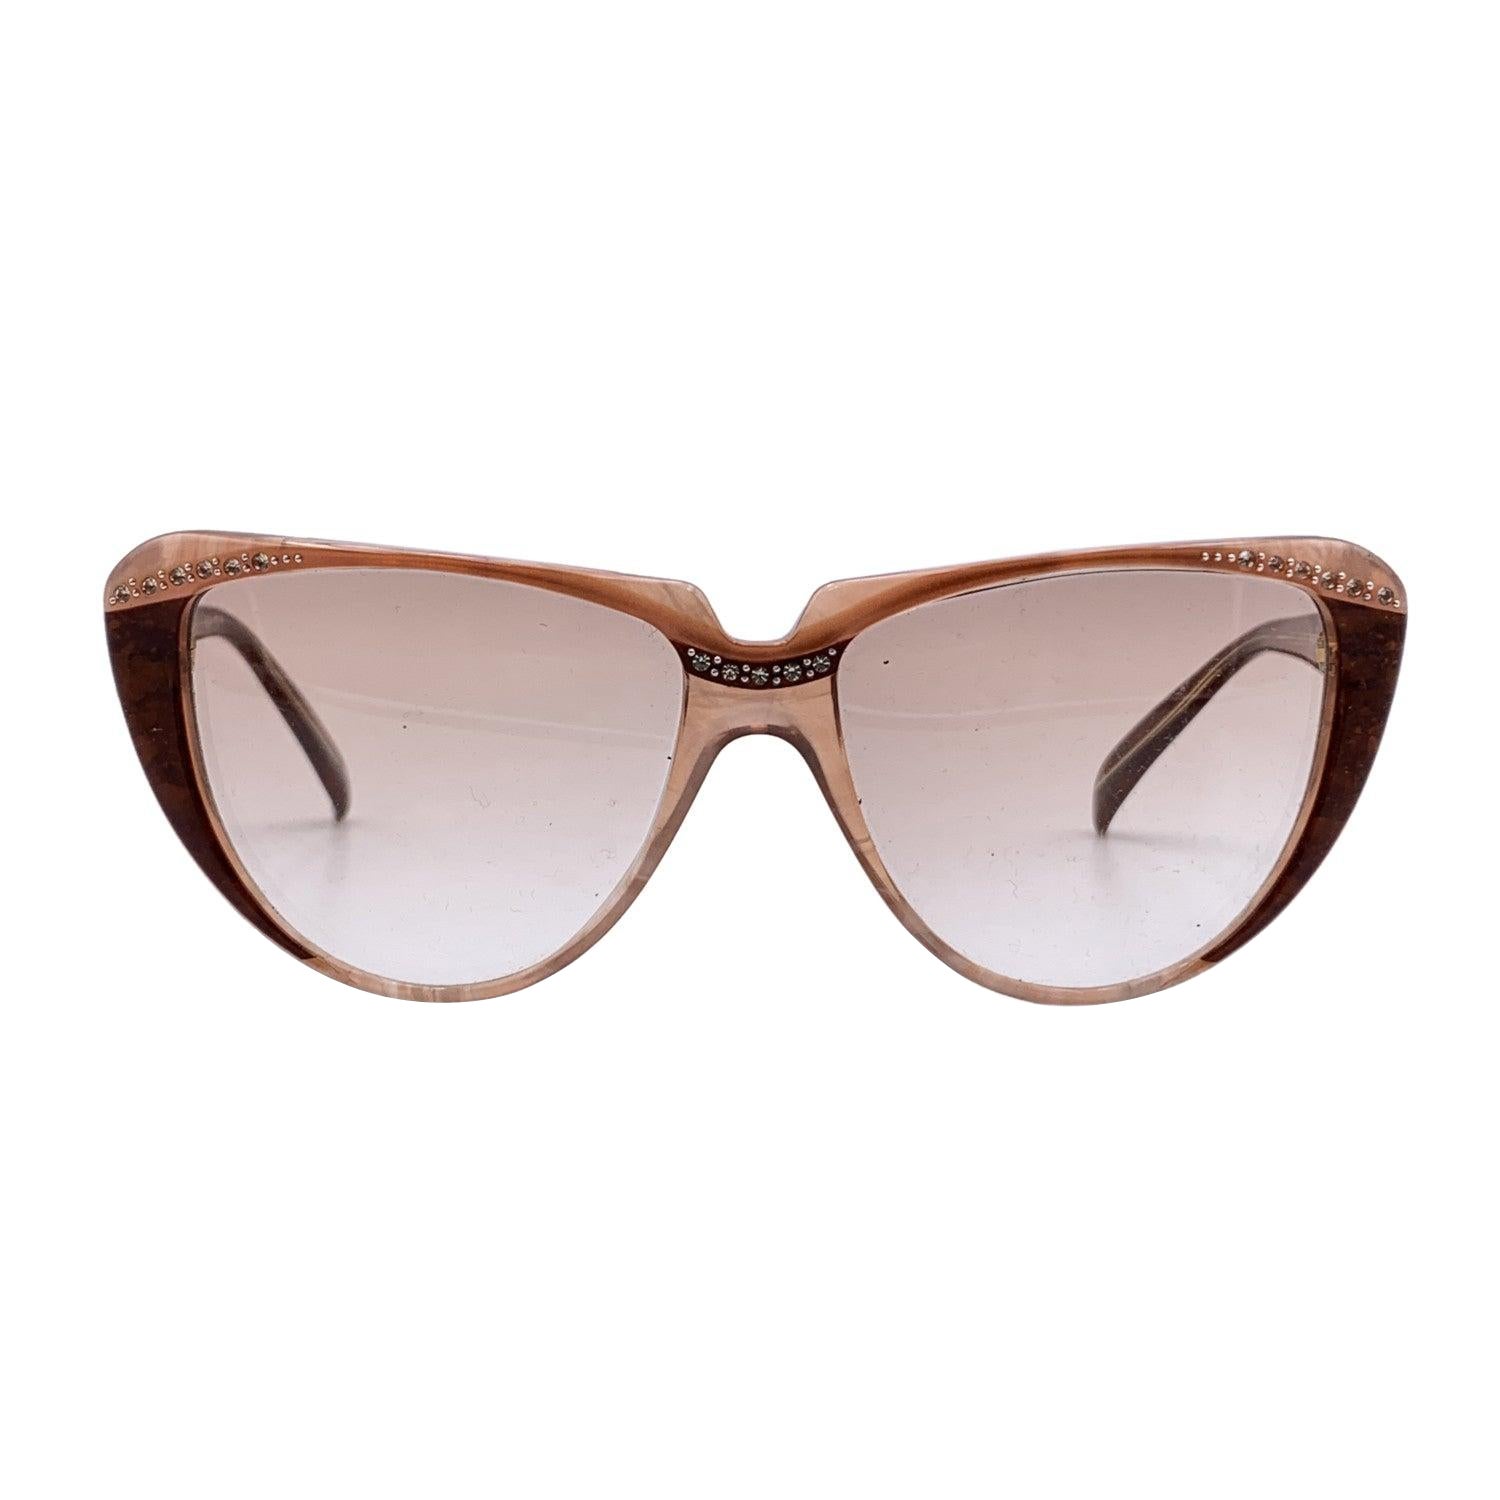 Yves Saint Laurent Vintage Cat Eye Sunglasses 8704 PO 74 50/20 125mm For Sale